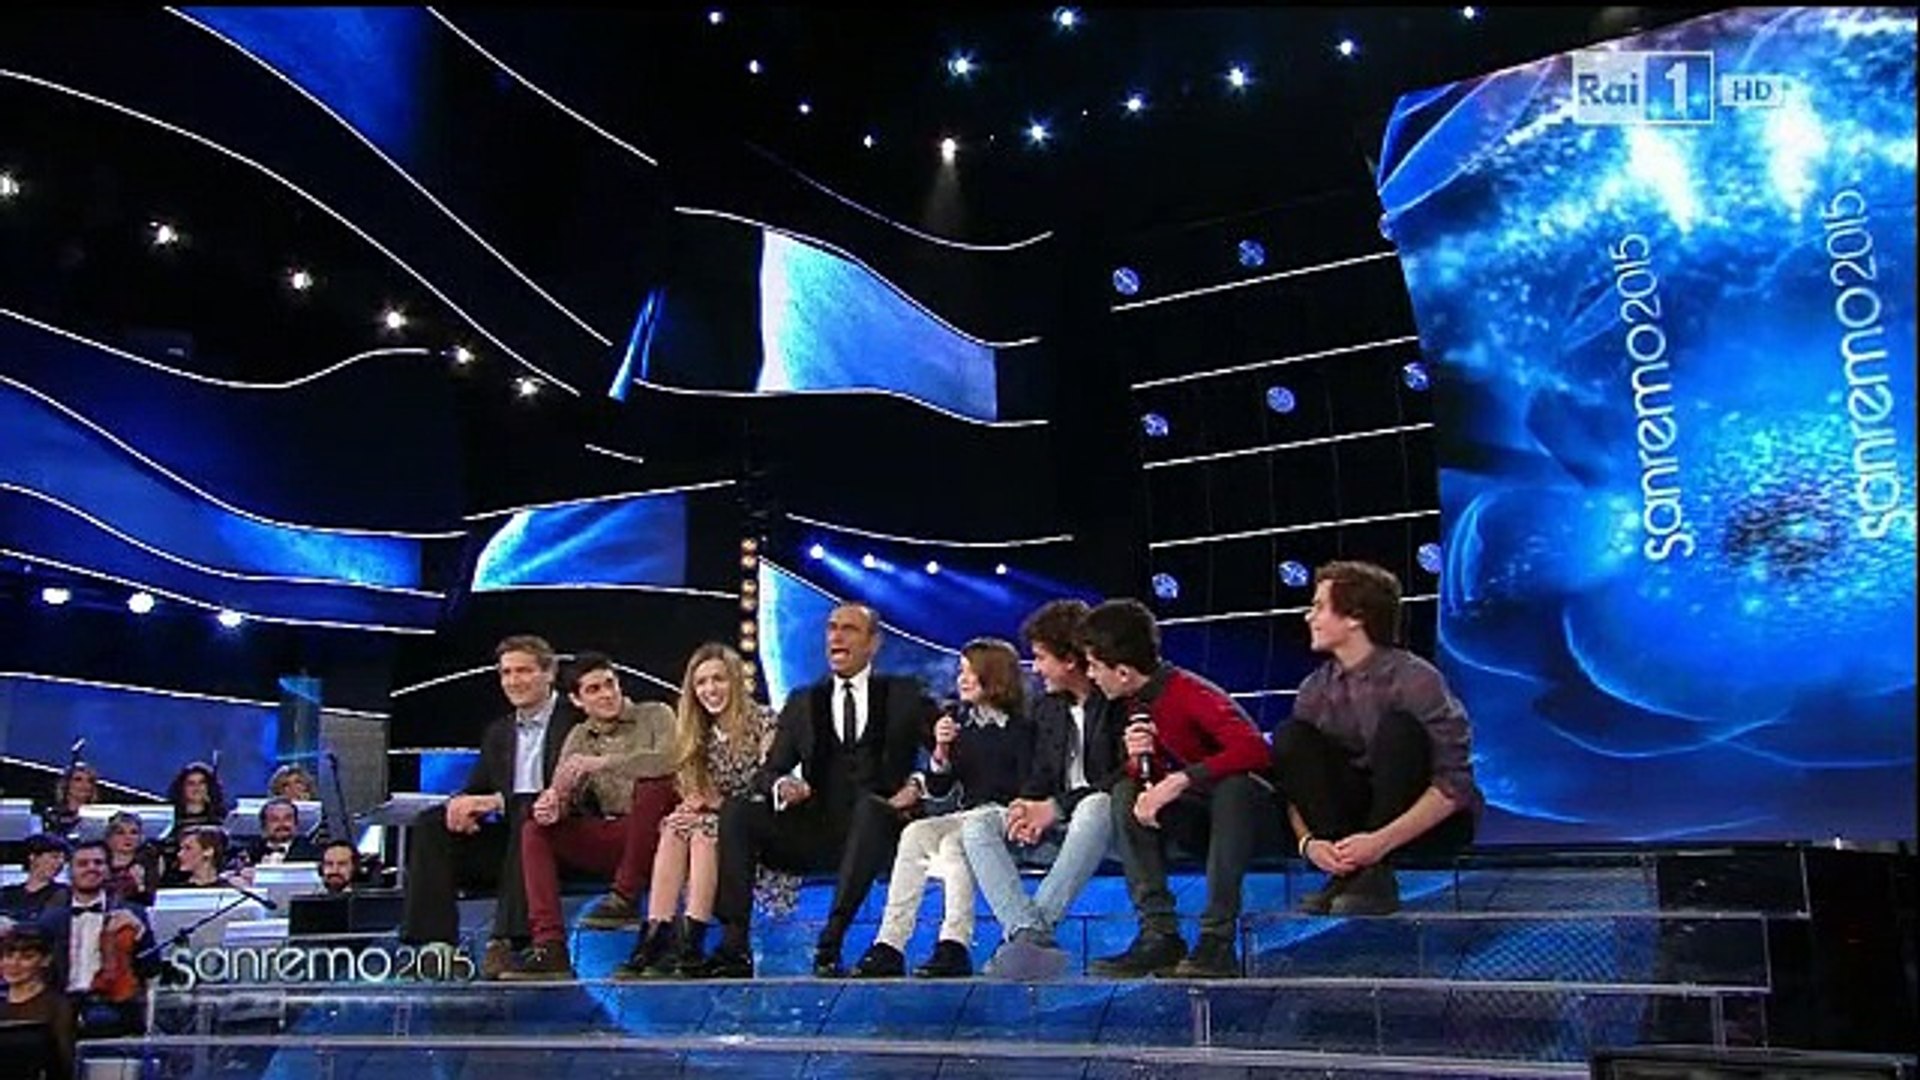 Il cast di "Braccialetti Rossi" a Sanremo 2015 - Video Dailymotion